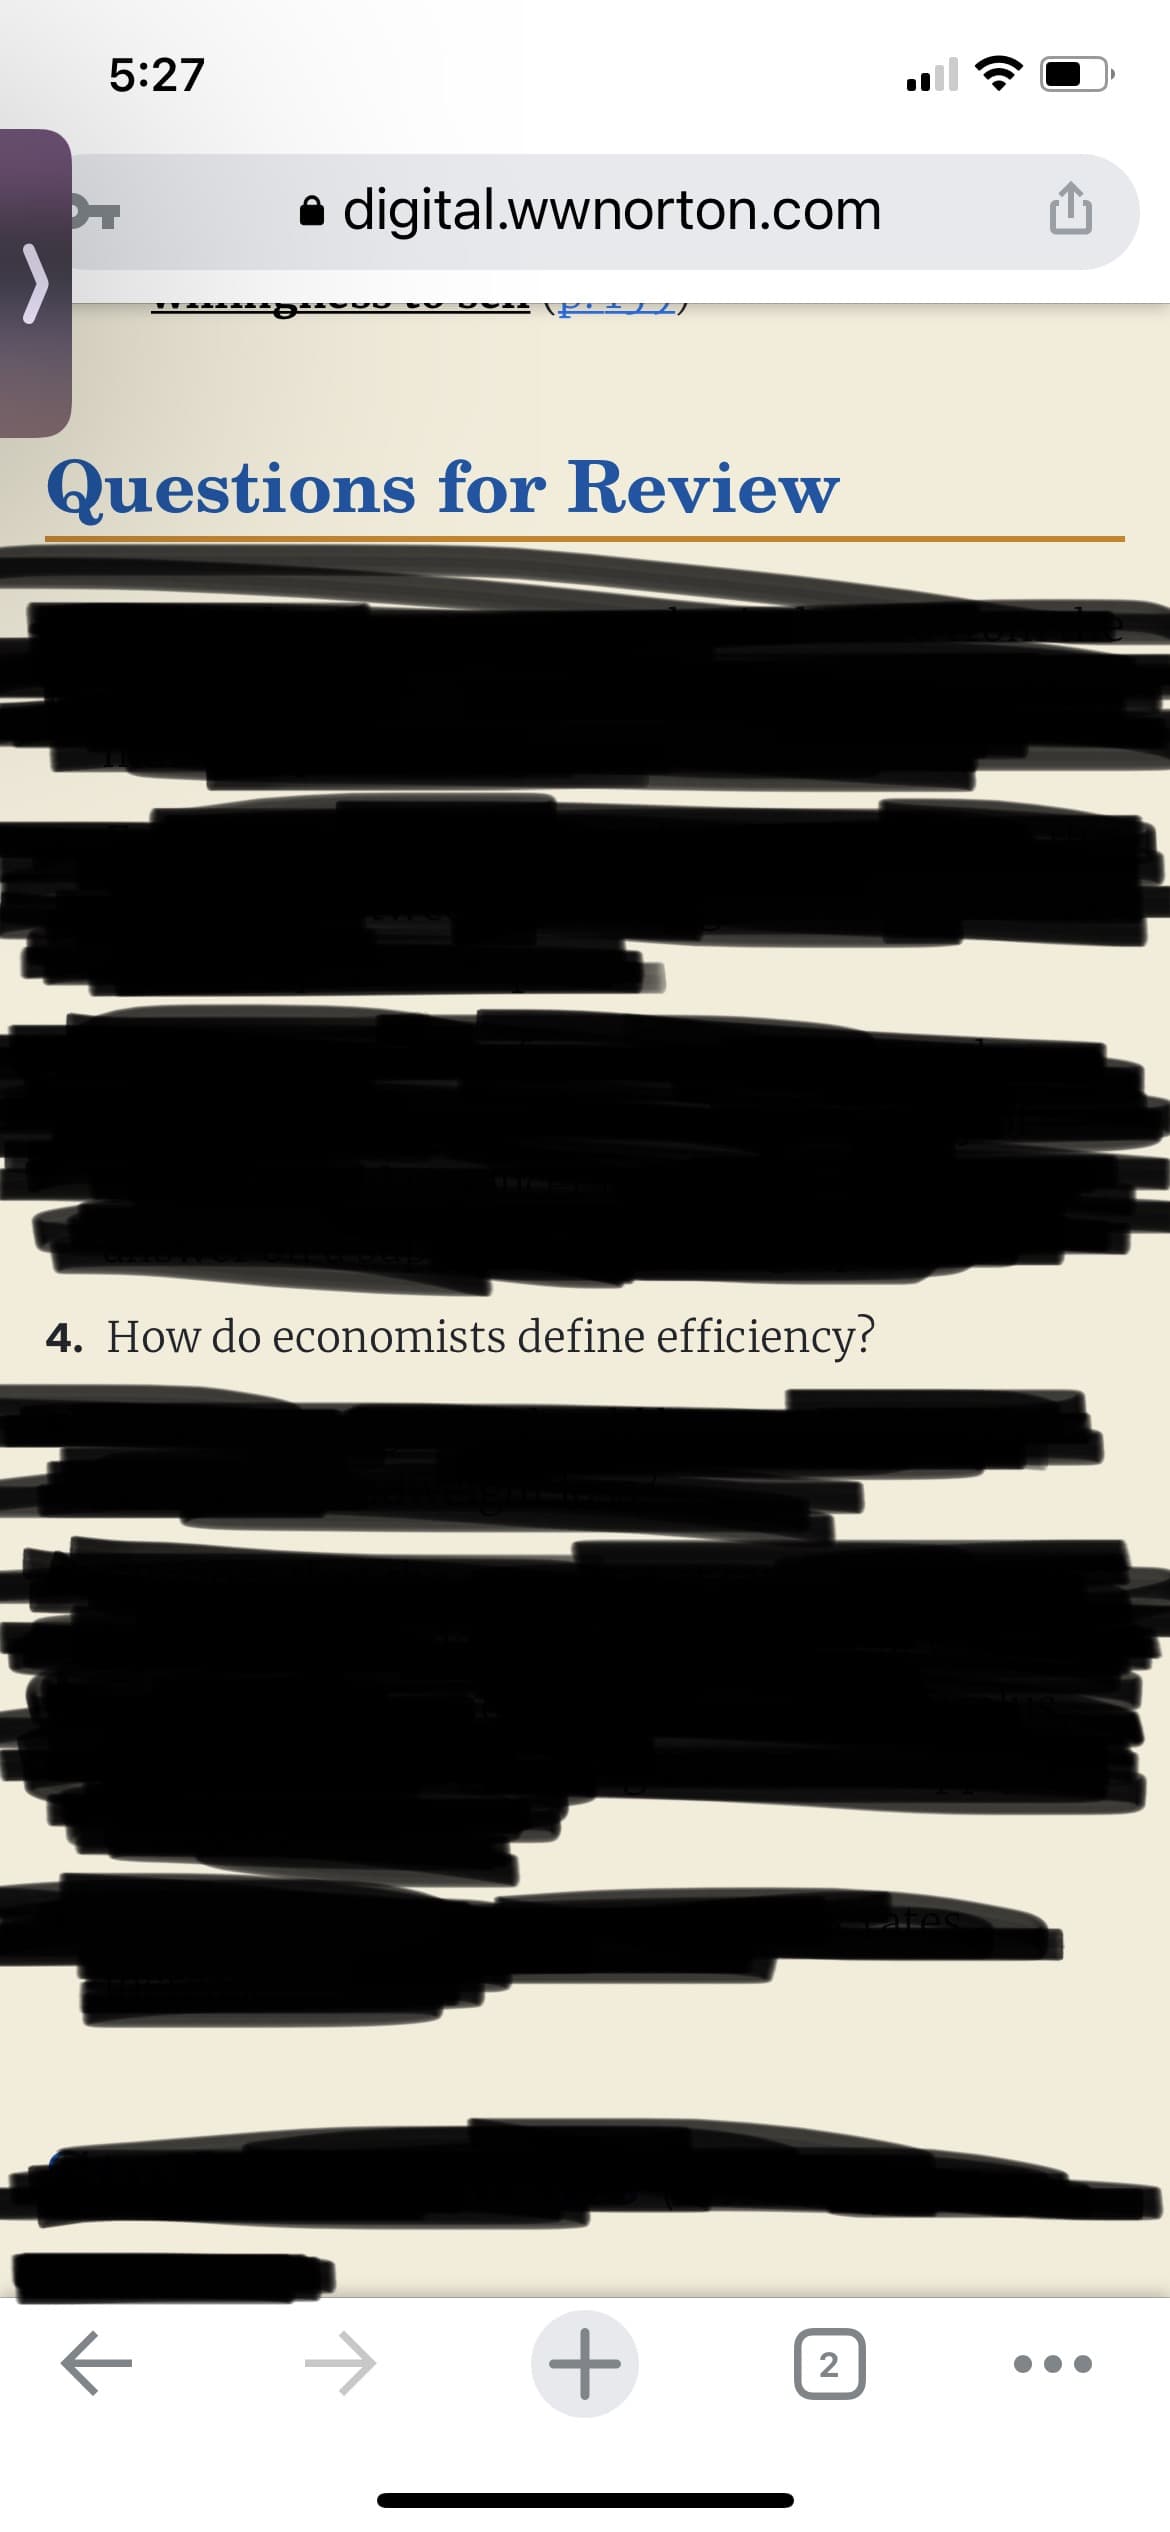 5:27
digital.wwnorton.com
SAVU
\PZ)
Questions for Review
4. How do economists define efficiency?
+
T
2